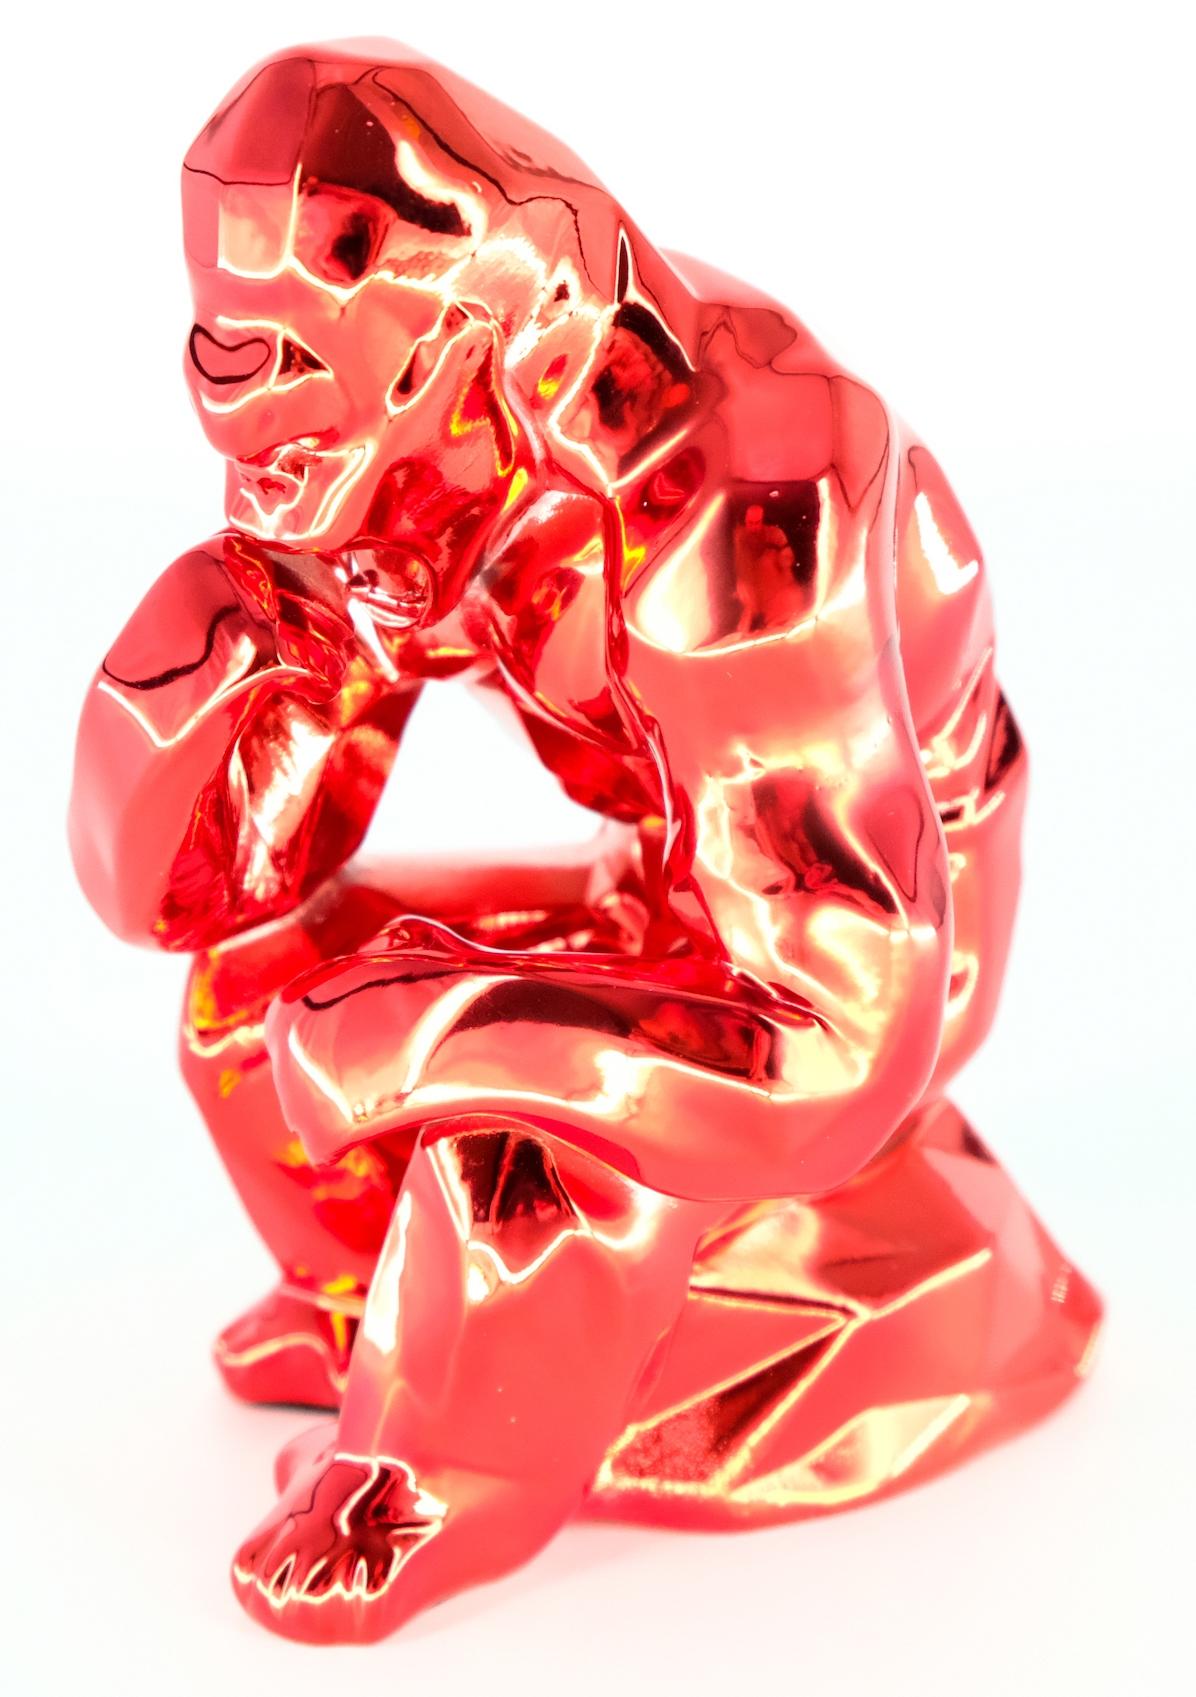 Richard ORLINSKI
L'esprit penseur d'Orlinski (édition rouge)

Sculpture en résine
Rouge métallique
Environ 10 x 13 x 7 cm (c. 3, x 5,1 x 2,8 in).
Présenté dans sa boîte d'origine avec certificat

Excellent état